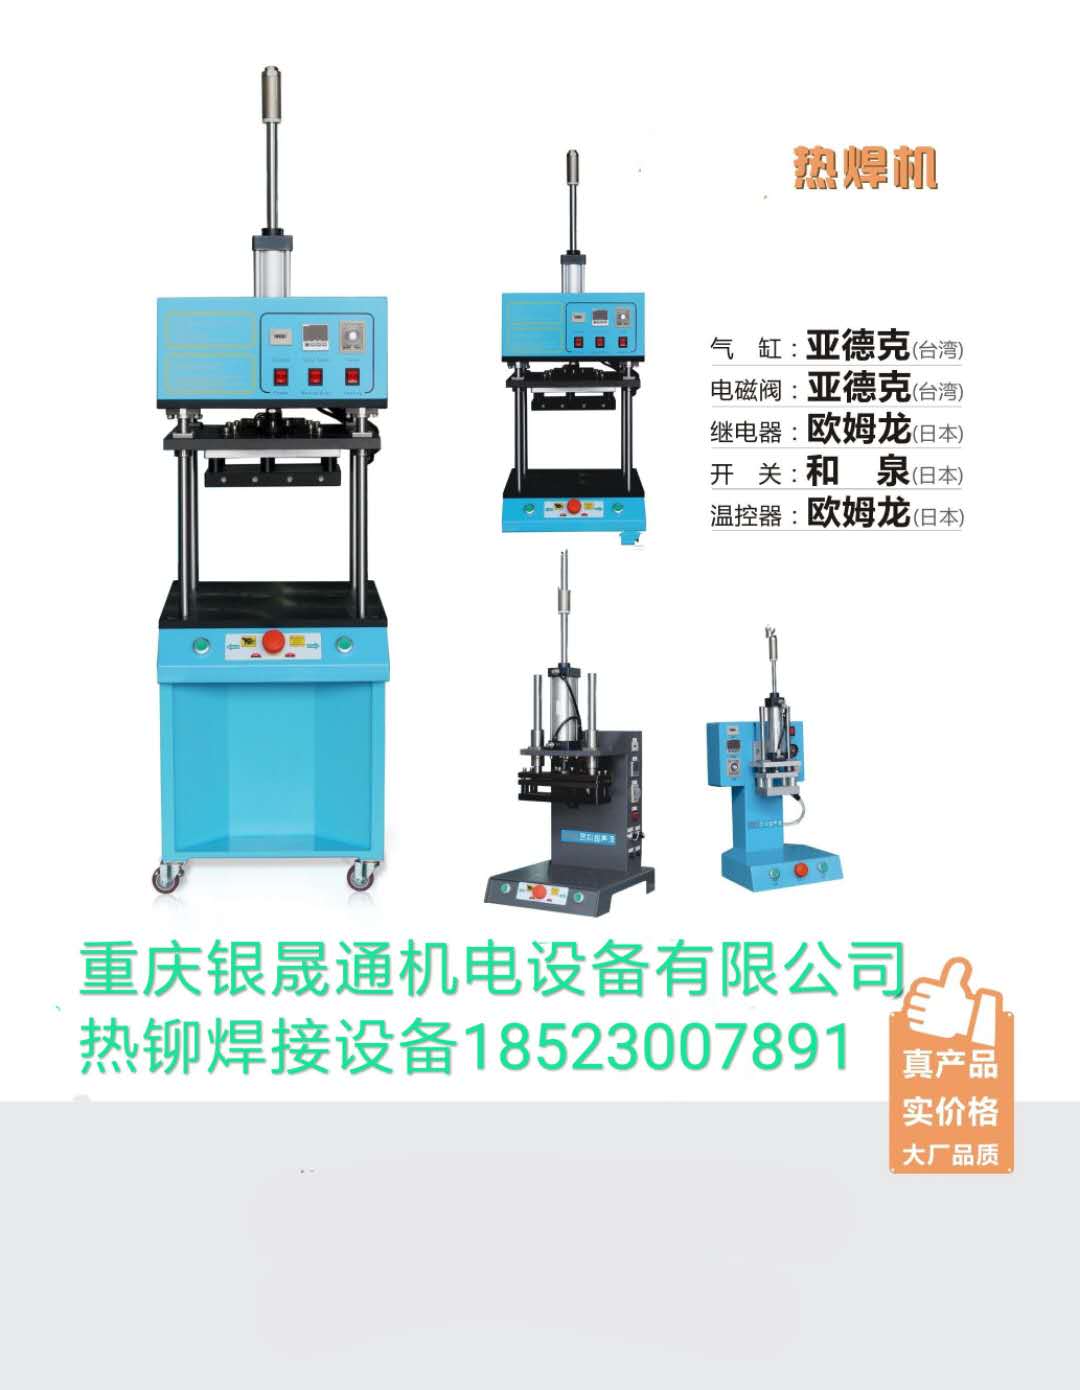 重庆超声波焊接设备厂家定制、重庆超声波焊接设备售后维修、超声波焊接设备